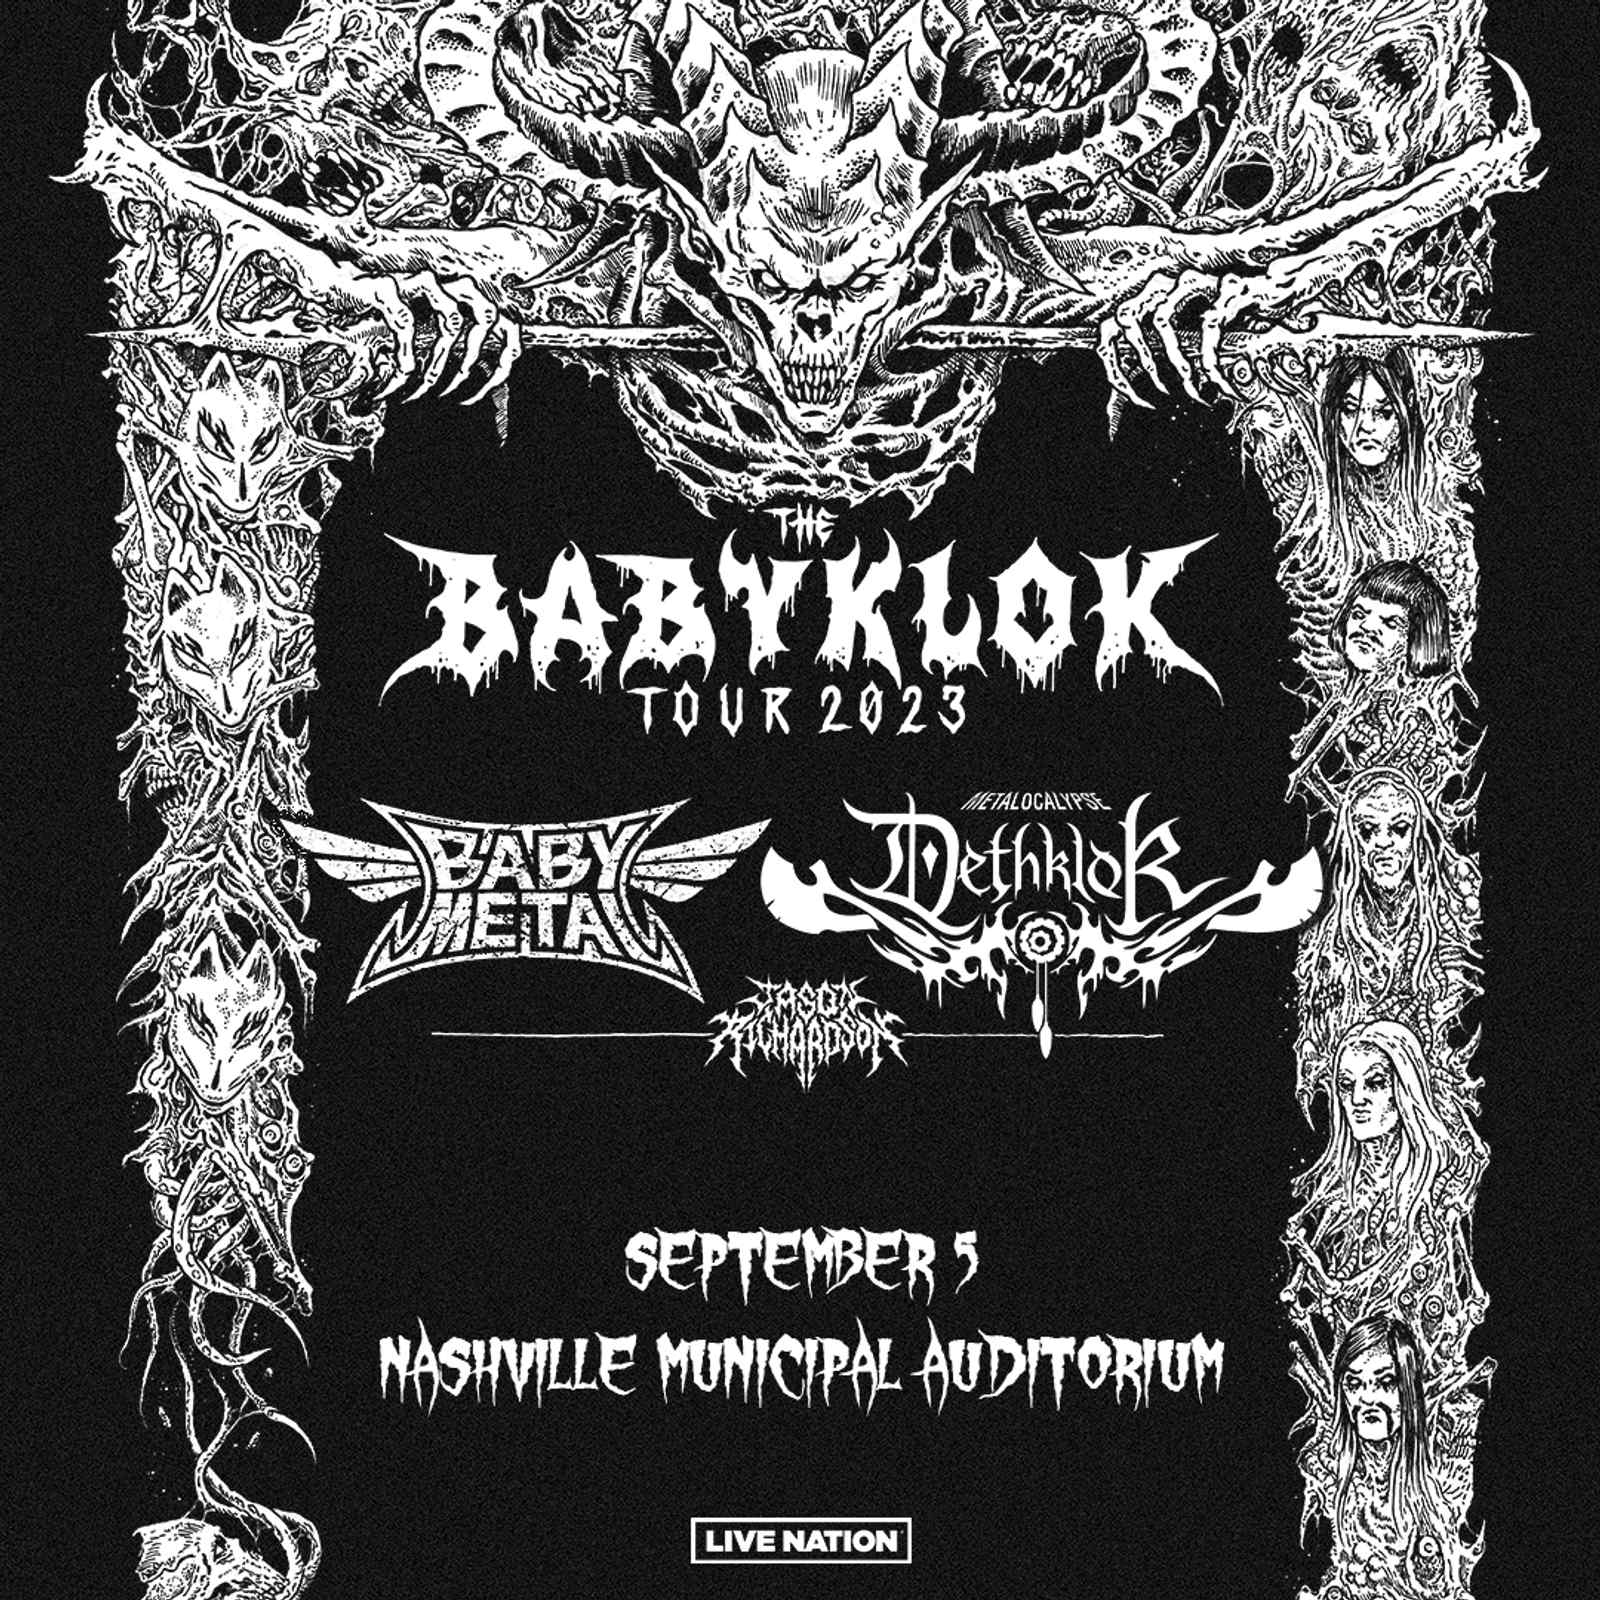 THE BABYKLOK TOUR!